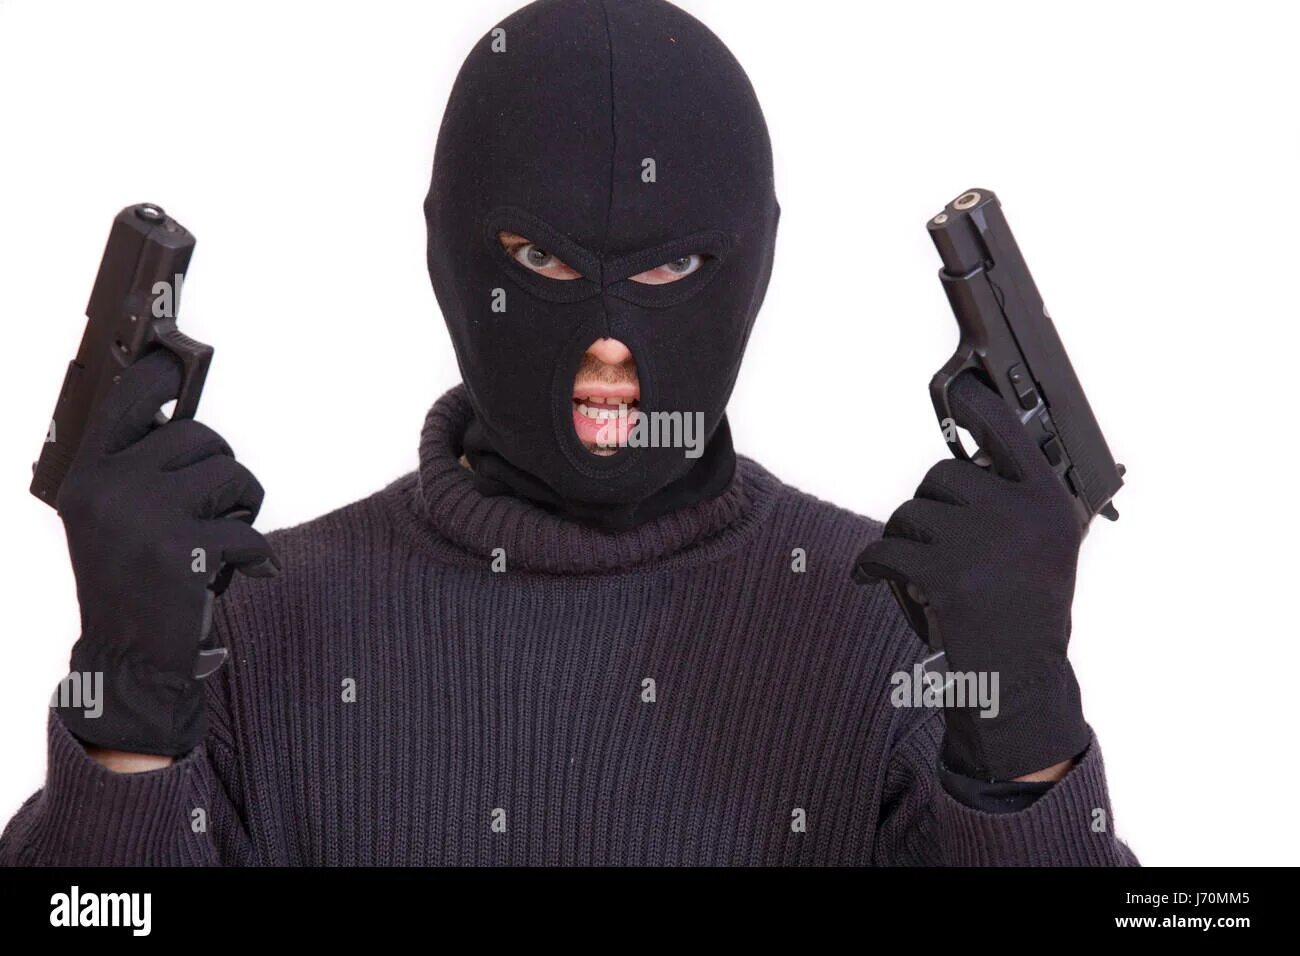 Бандит с пистолетом. Бандит в Балаклаве. Человек в маске с пистолетом. Бандит в маске с пистолетом.